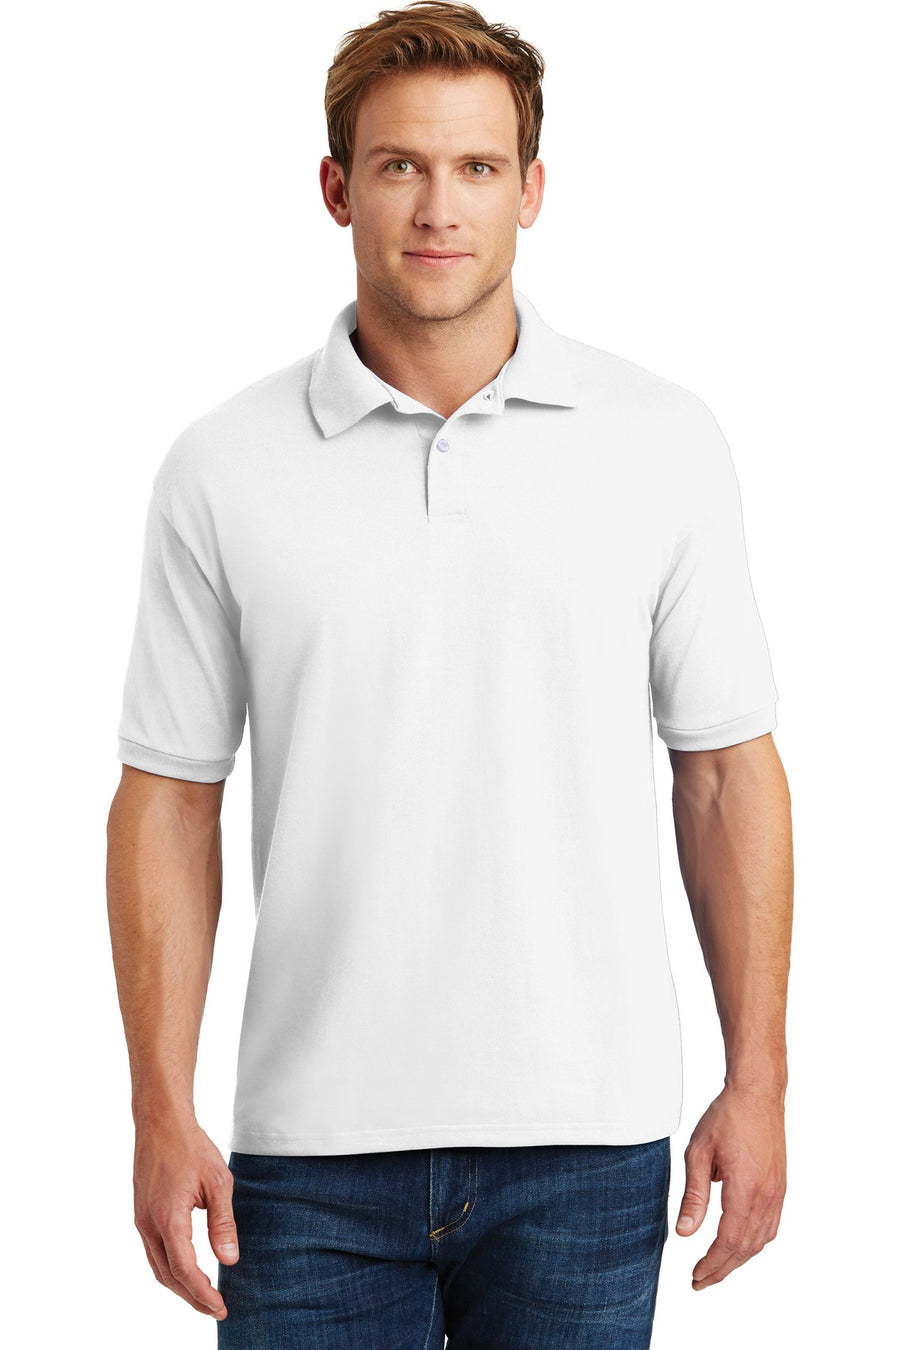 Hanes EcoSmart - 5.2-Ounce Jersey Knit Sport Shirt.